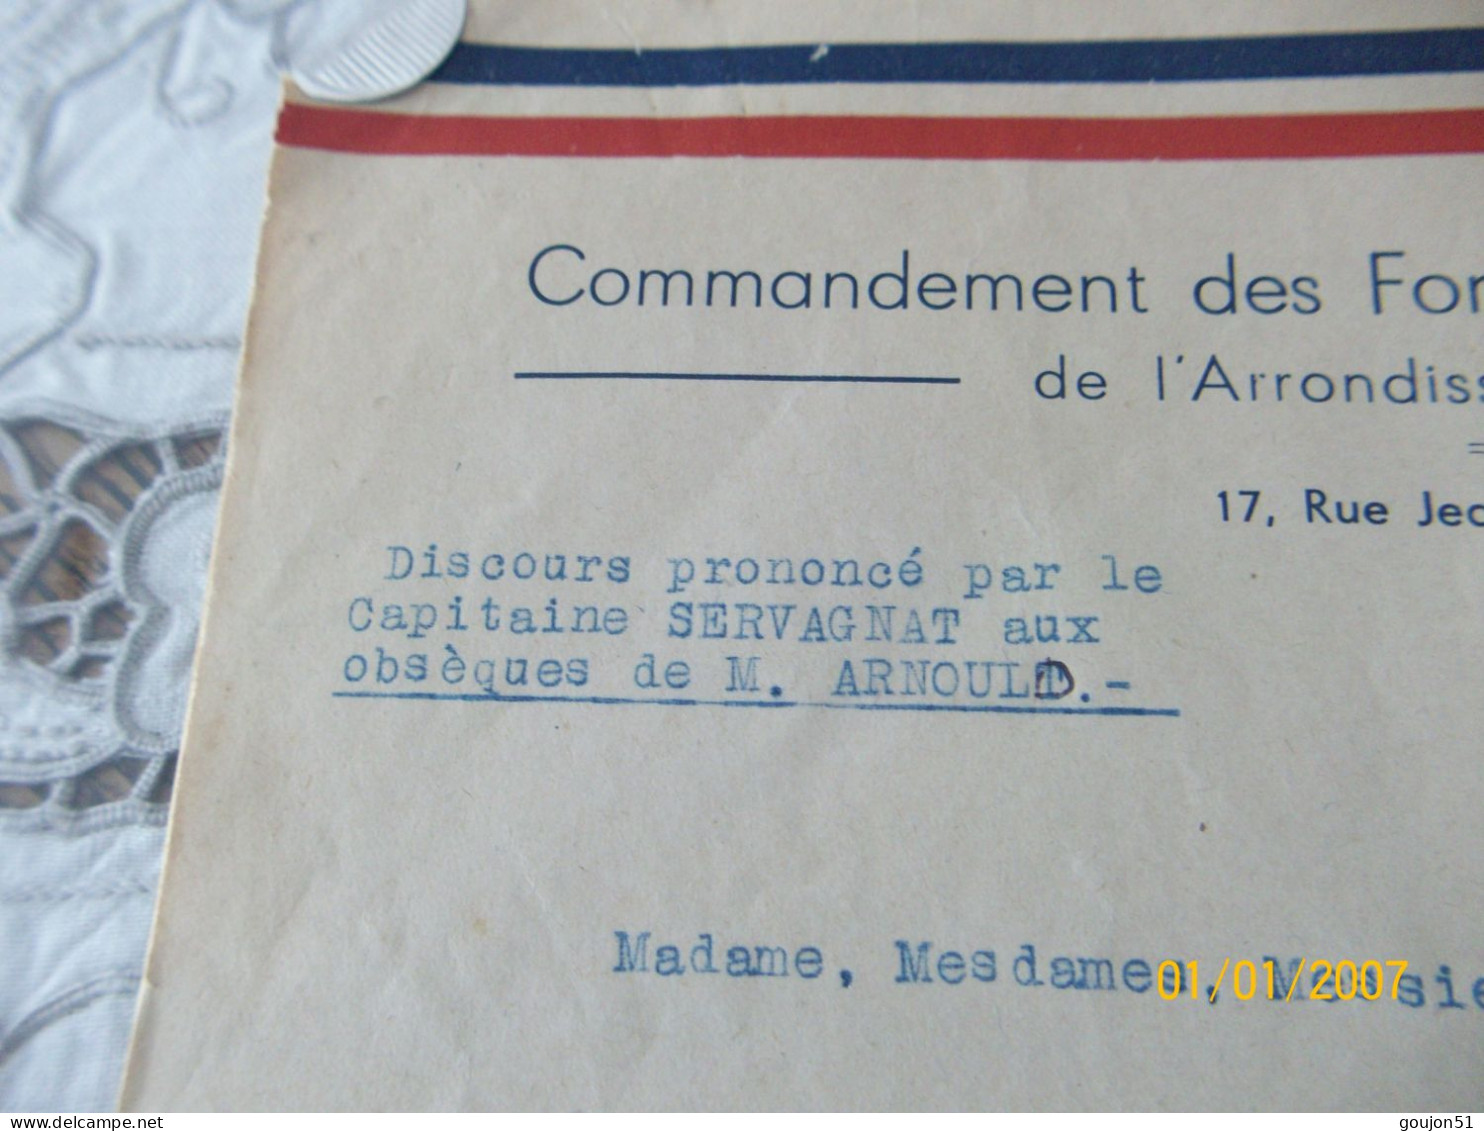 Lettre Commandement Des Forces Française De L' Intérieur De L'Arrondissement D'Epernay Discours Prononcé Par Le Capitain - Dokumente